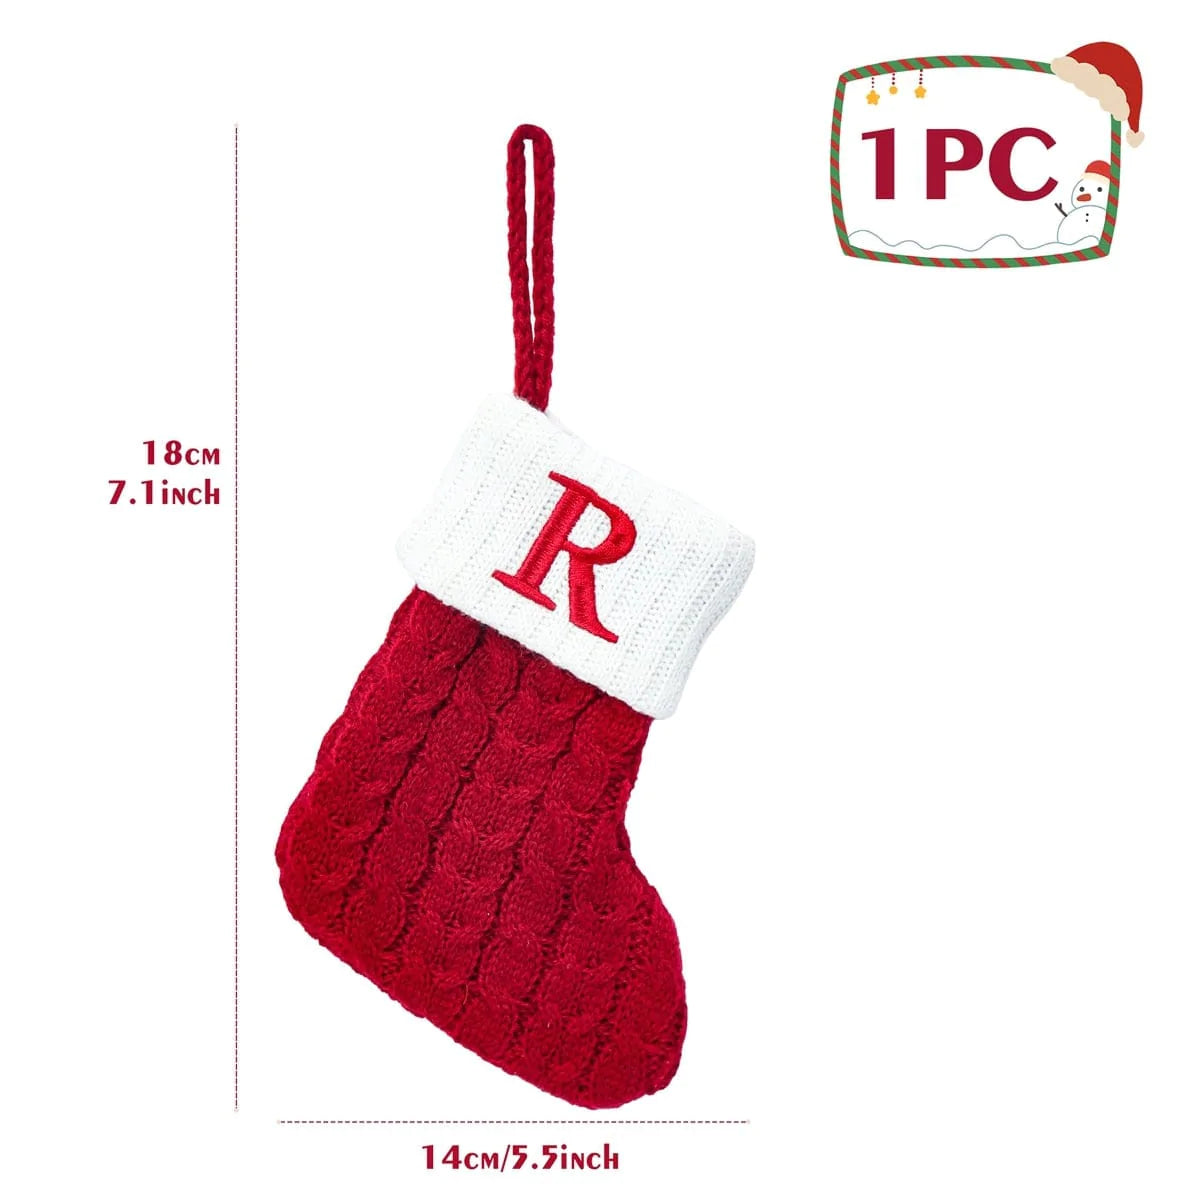 Knitted Christmas Alphabet Letters Socks Blackbrdstore